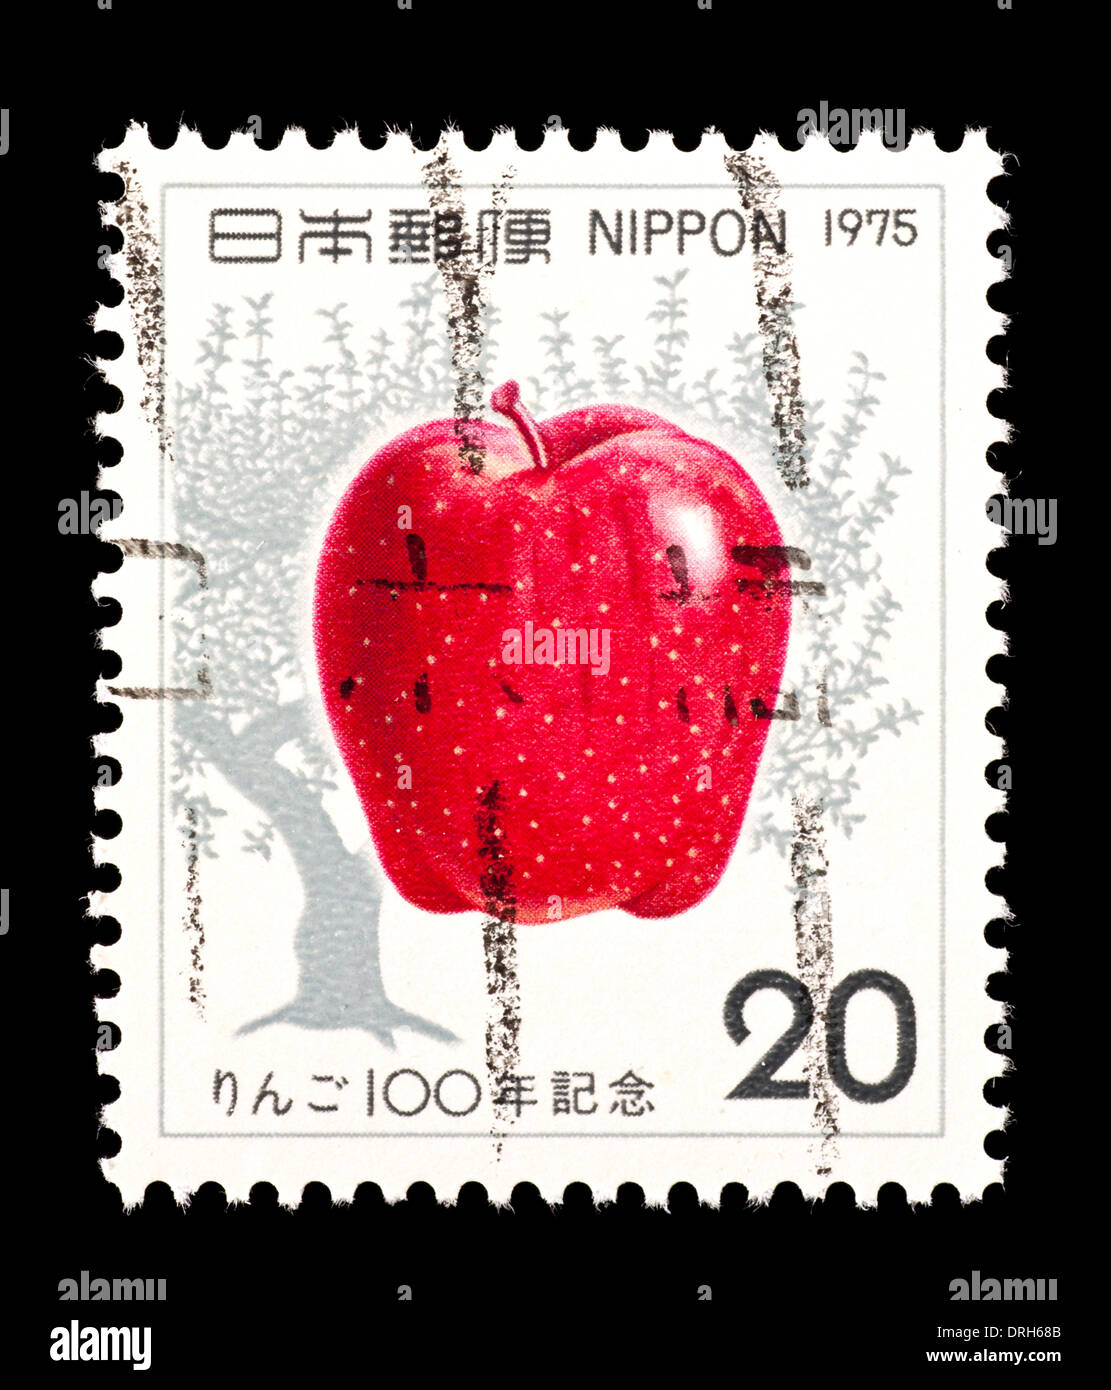 Francobollo dal Giappone che raffigura un Apple e Apple tree, rilasciati per il secolo di apple la coltivazione in Giappone. Foto Stock